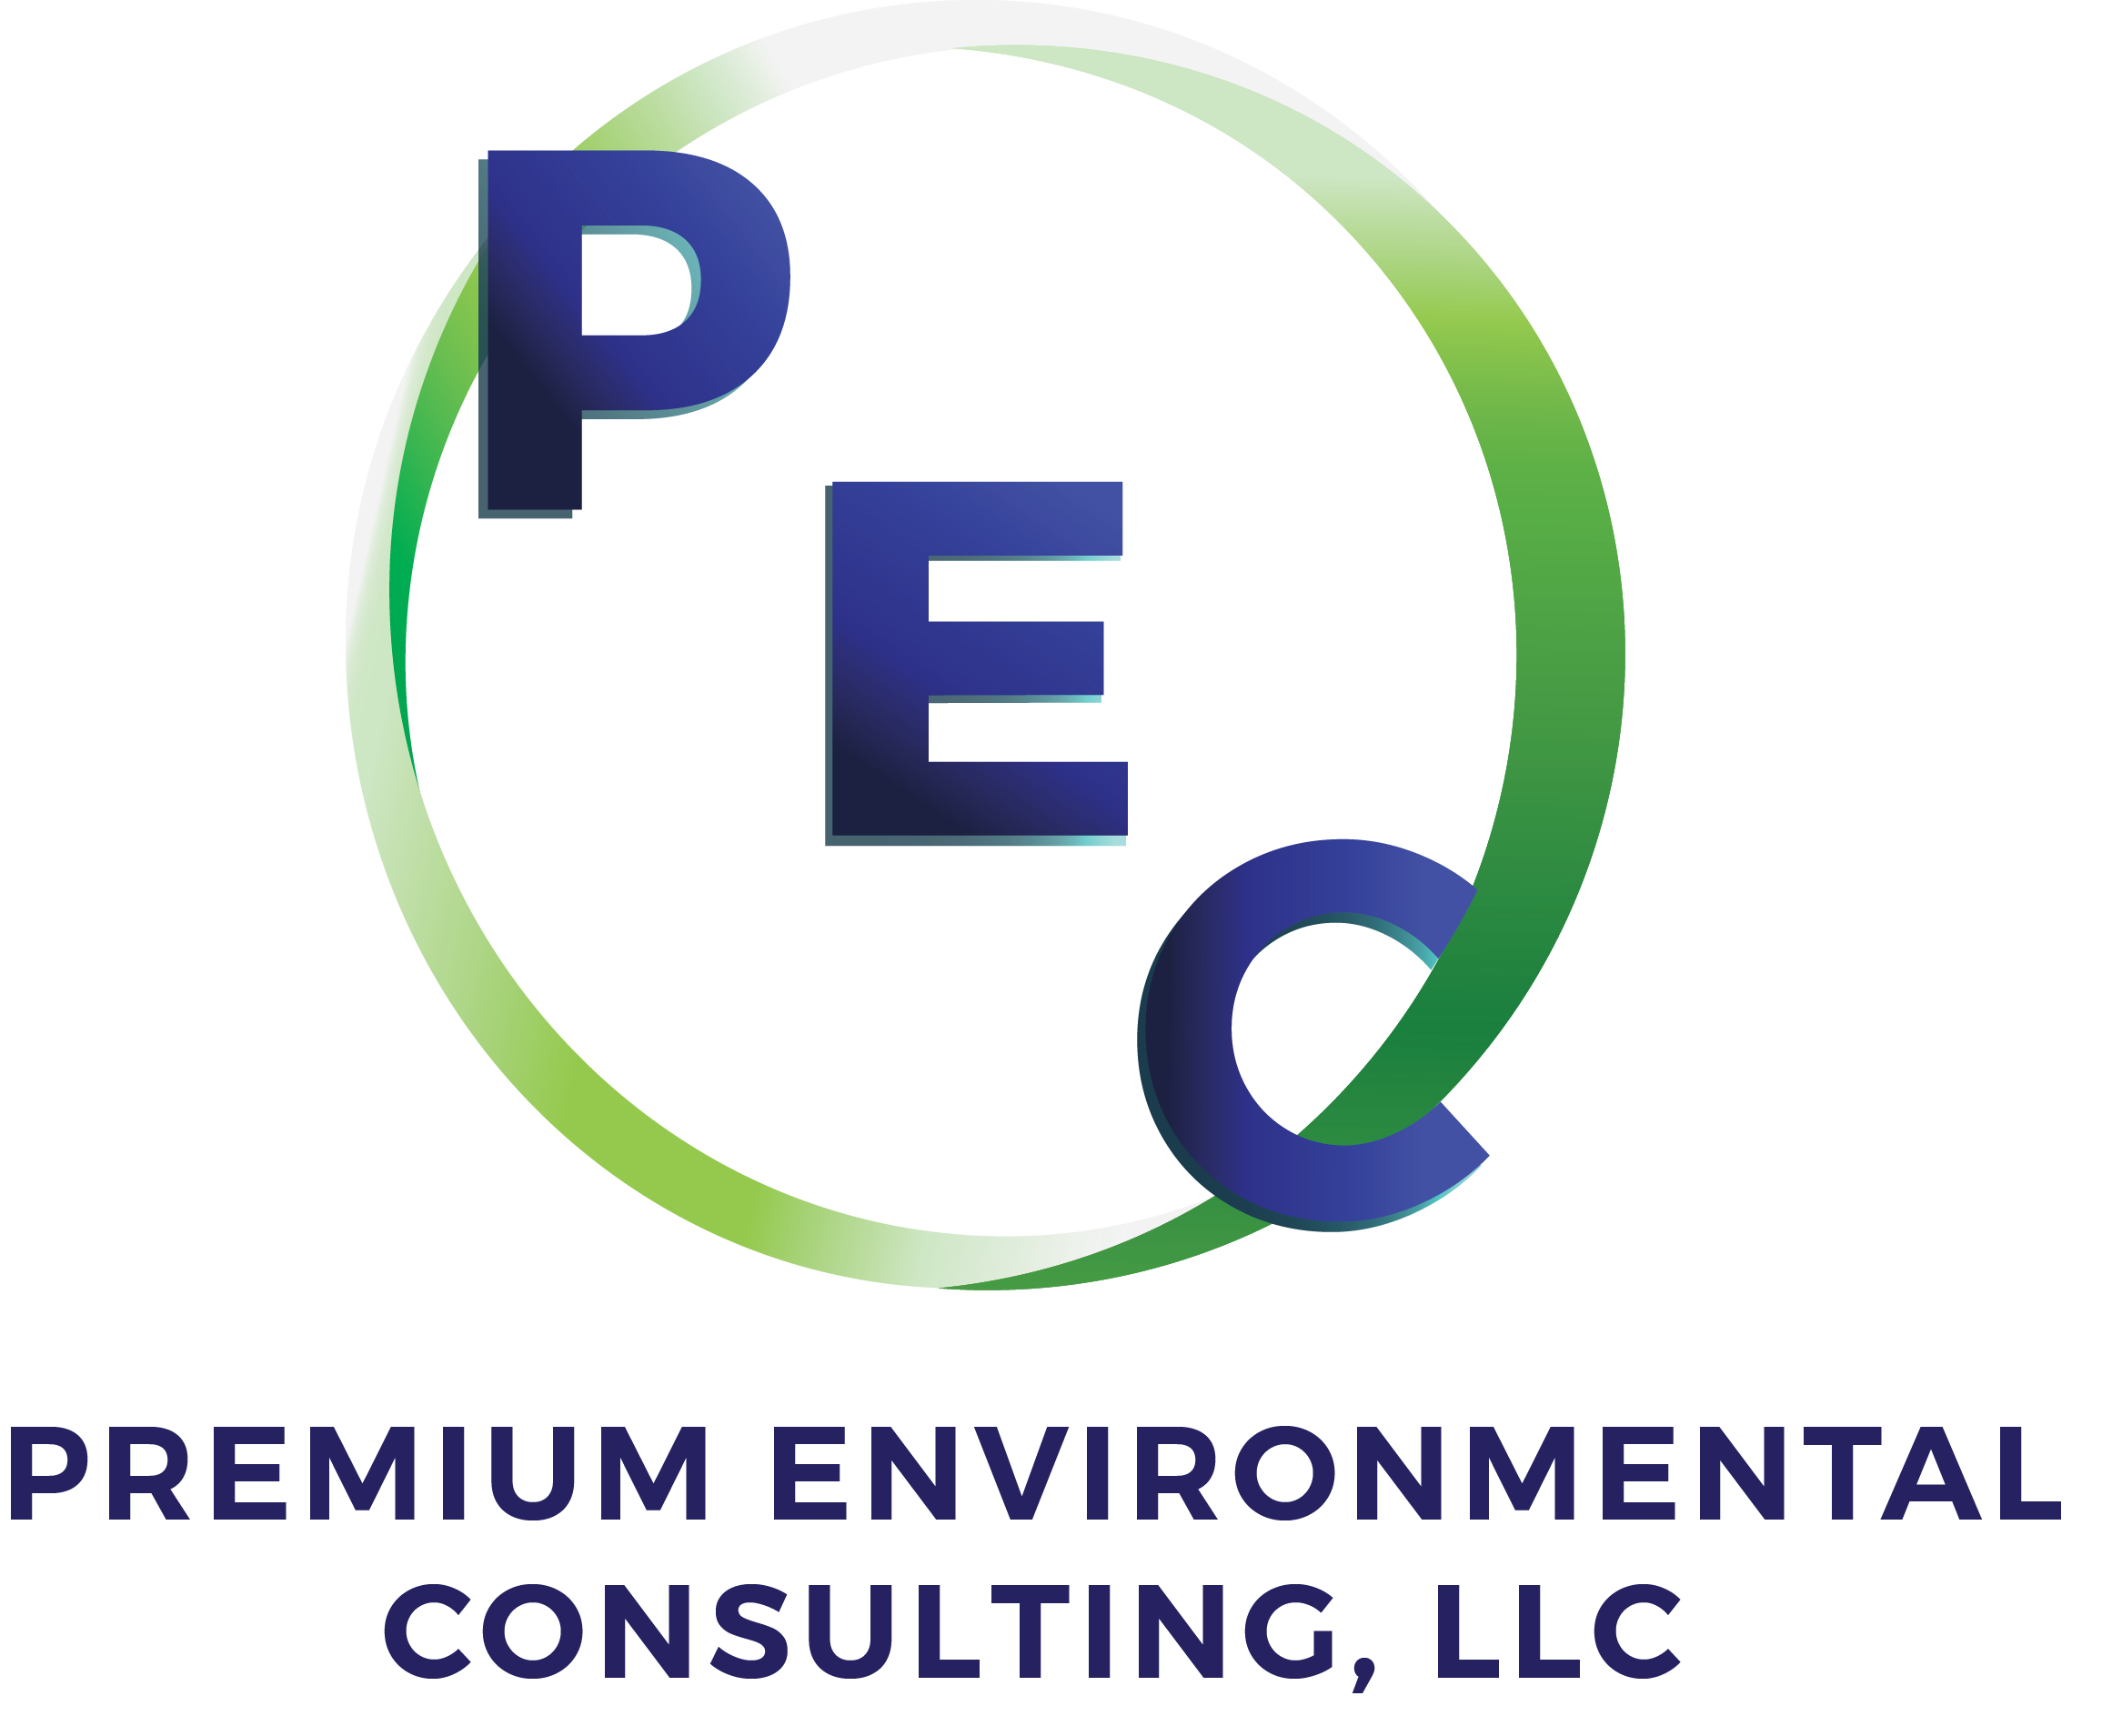 Premium Environmental Consulting, LLC